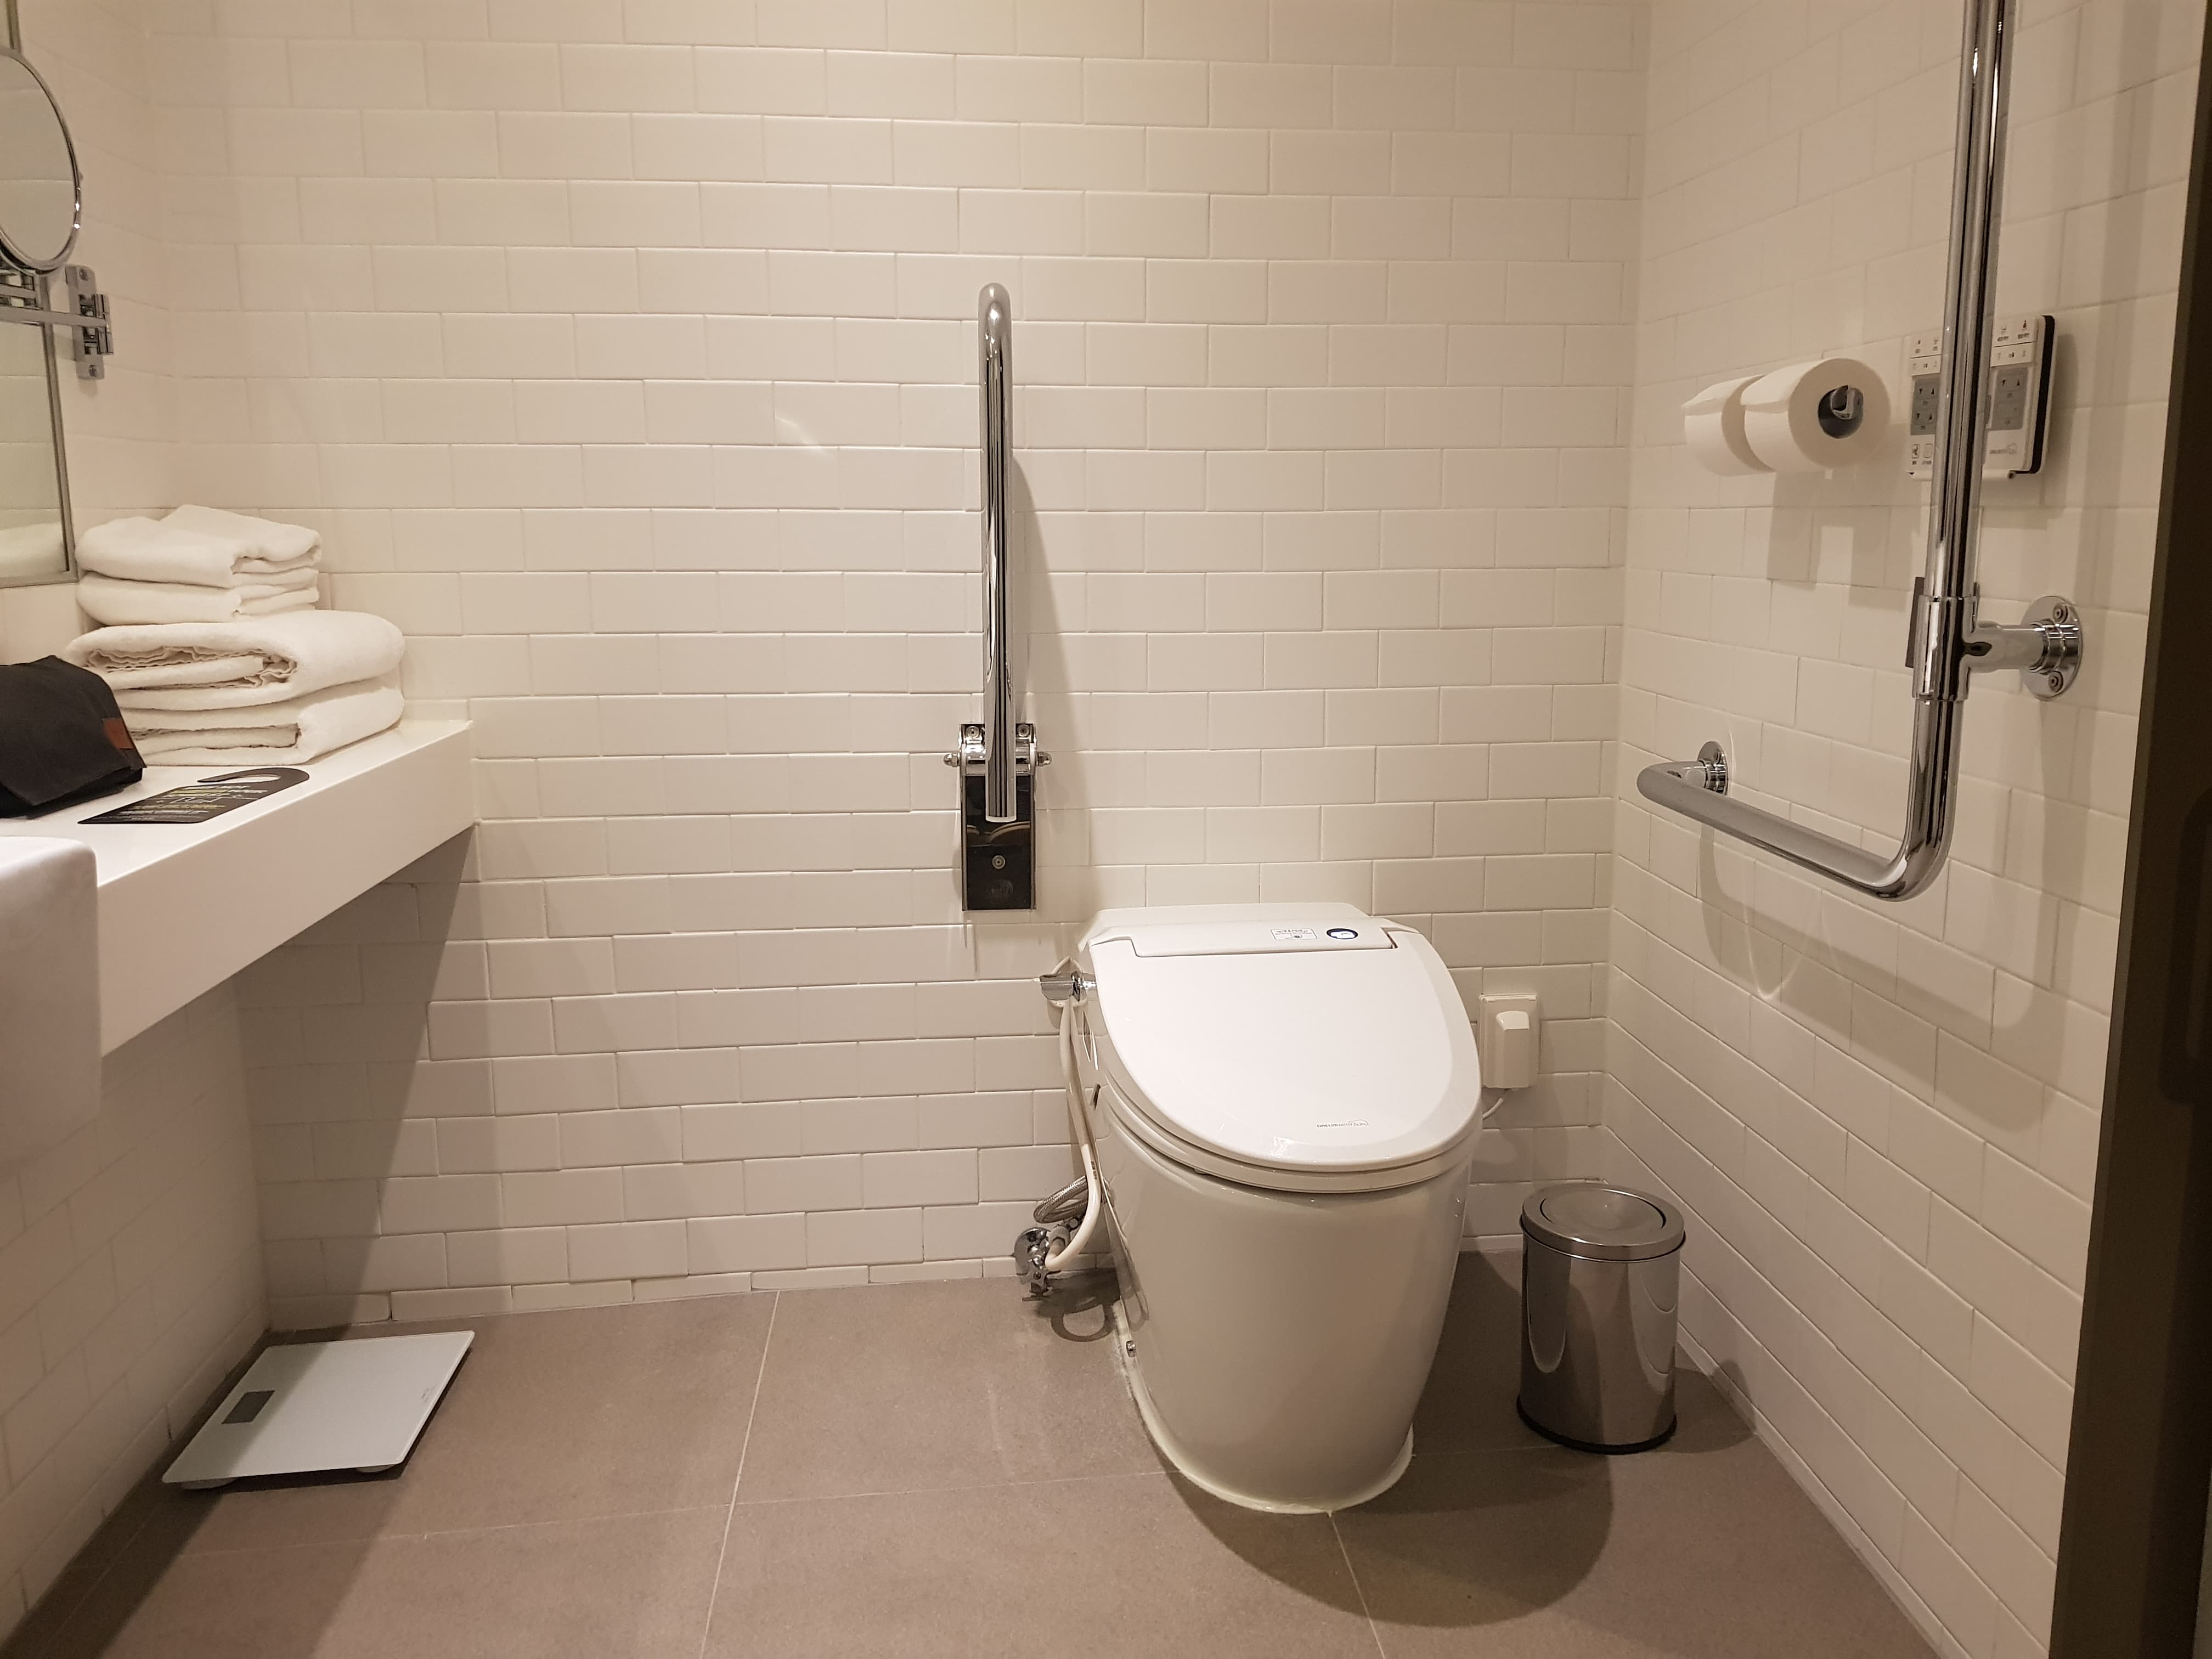 장애인 객실 화장실 0 : 안전 손잡이가 설치된 화장실